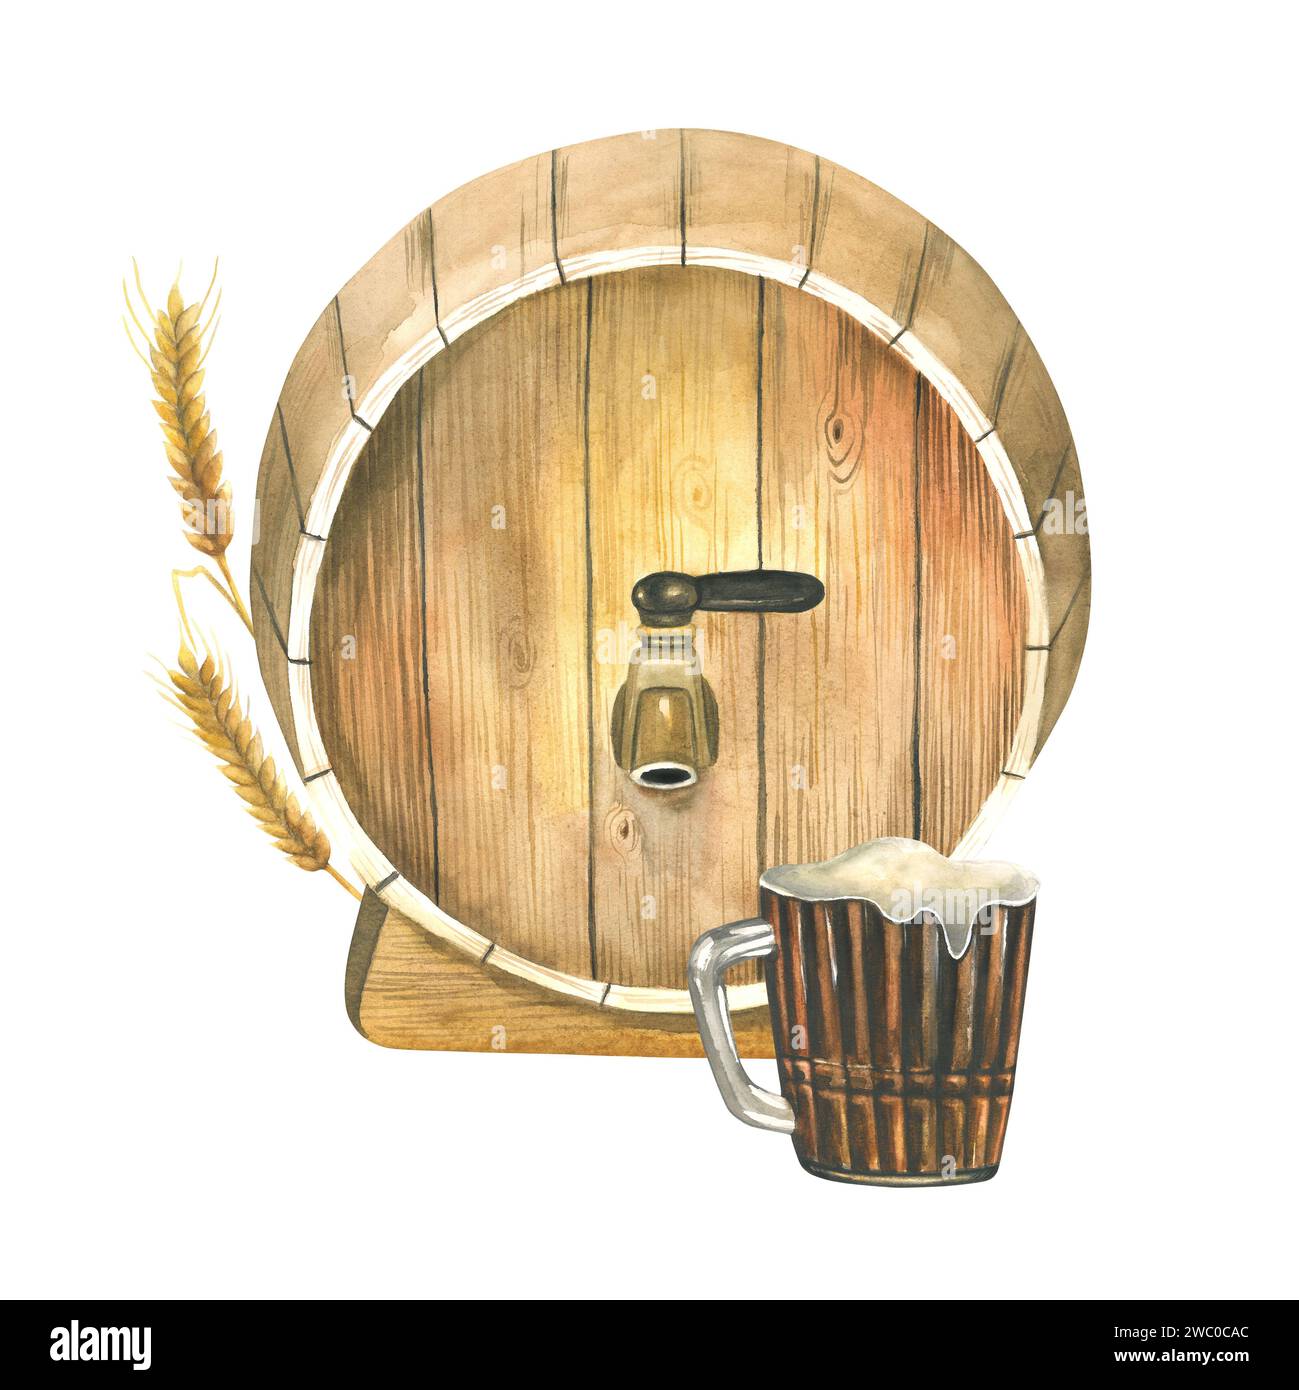 Illustration à l'aquarelle d'un tonneau de bière, d'une oreille d'orge, d'une tasse de bière, tirée à la main, isolée sur fond blanc Banque D'Images